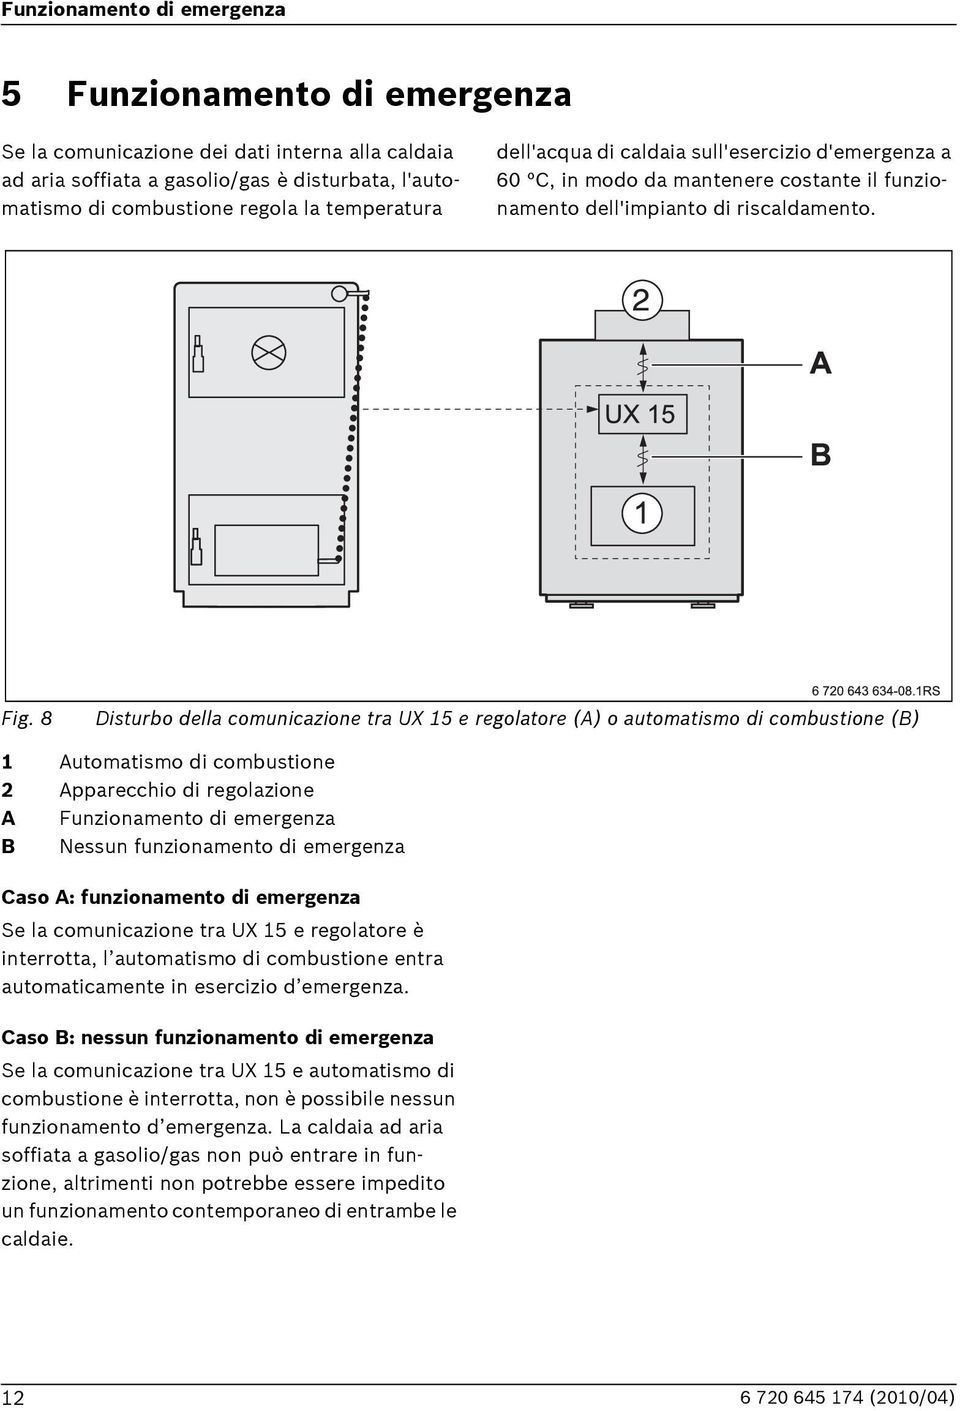 8 Disturbo della comunicazione tra UX 15 e regolatore (A) o automatismo di combustione () 1 Automatismo di combustione 2 Apparecchio di regolazione A Funzionamento di emergenza Nessun funzionamento